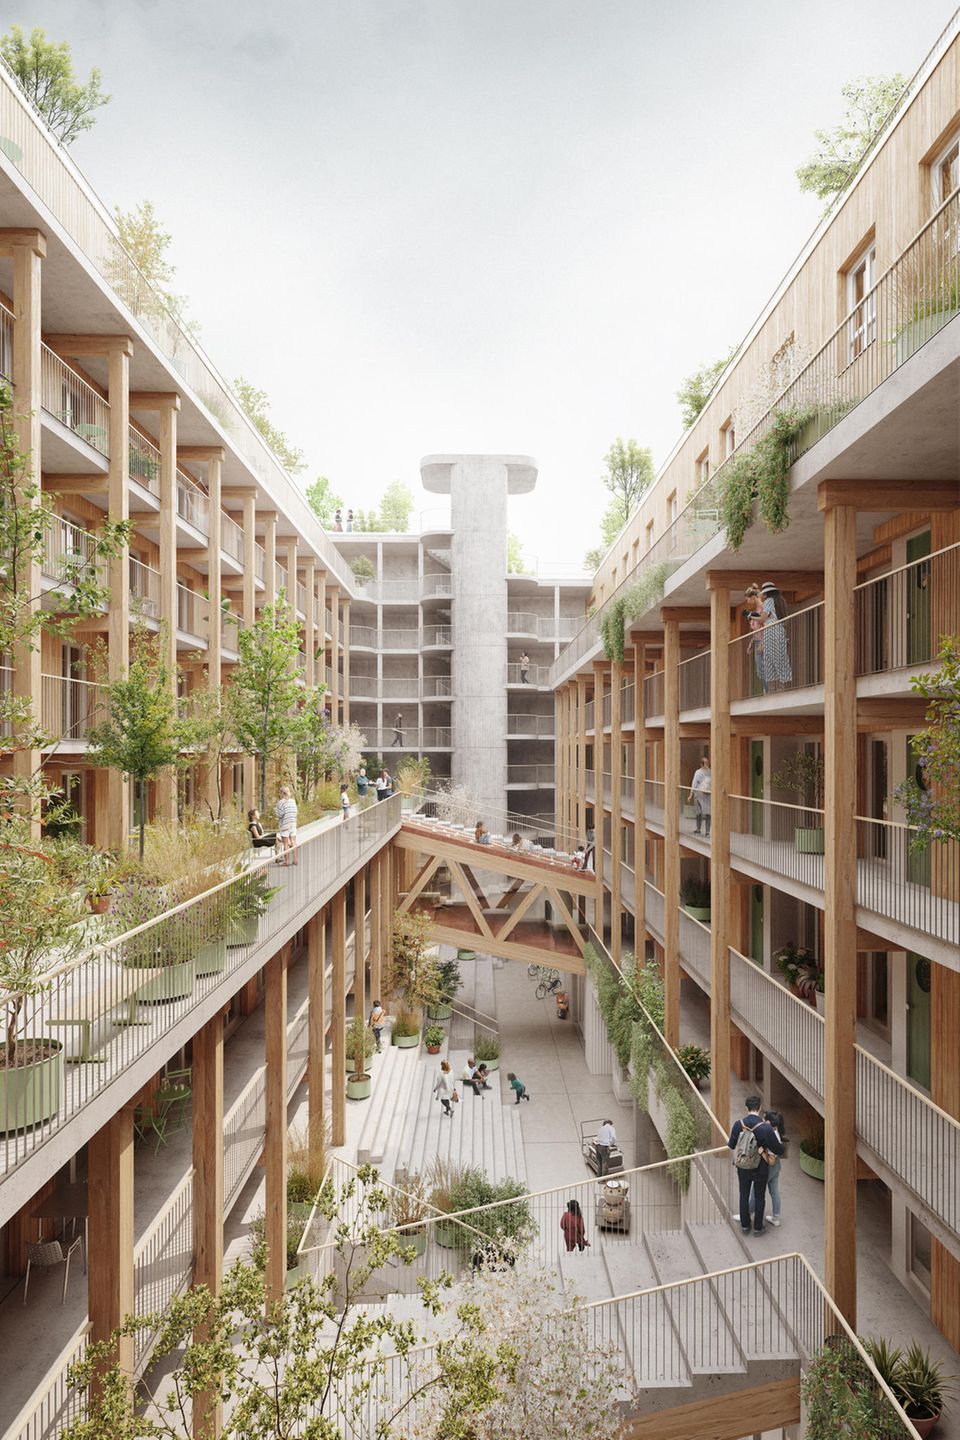 Architects for Future: "Einfamilienhäuser sind eine ineffiziente Wohnform"